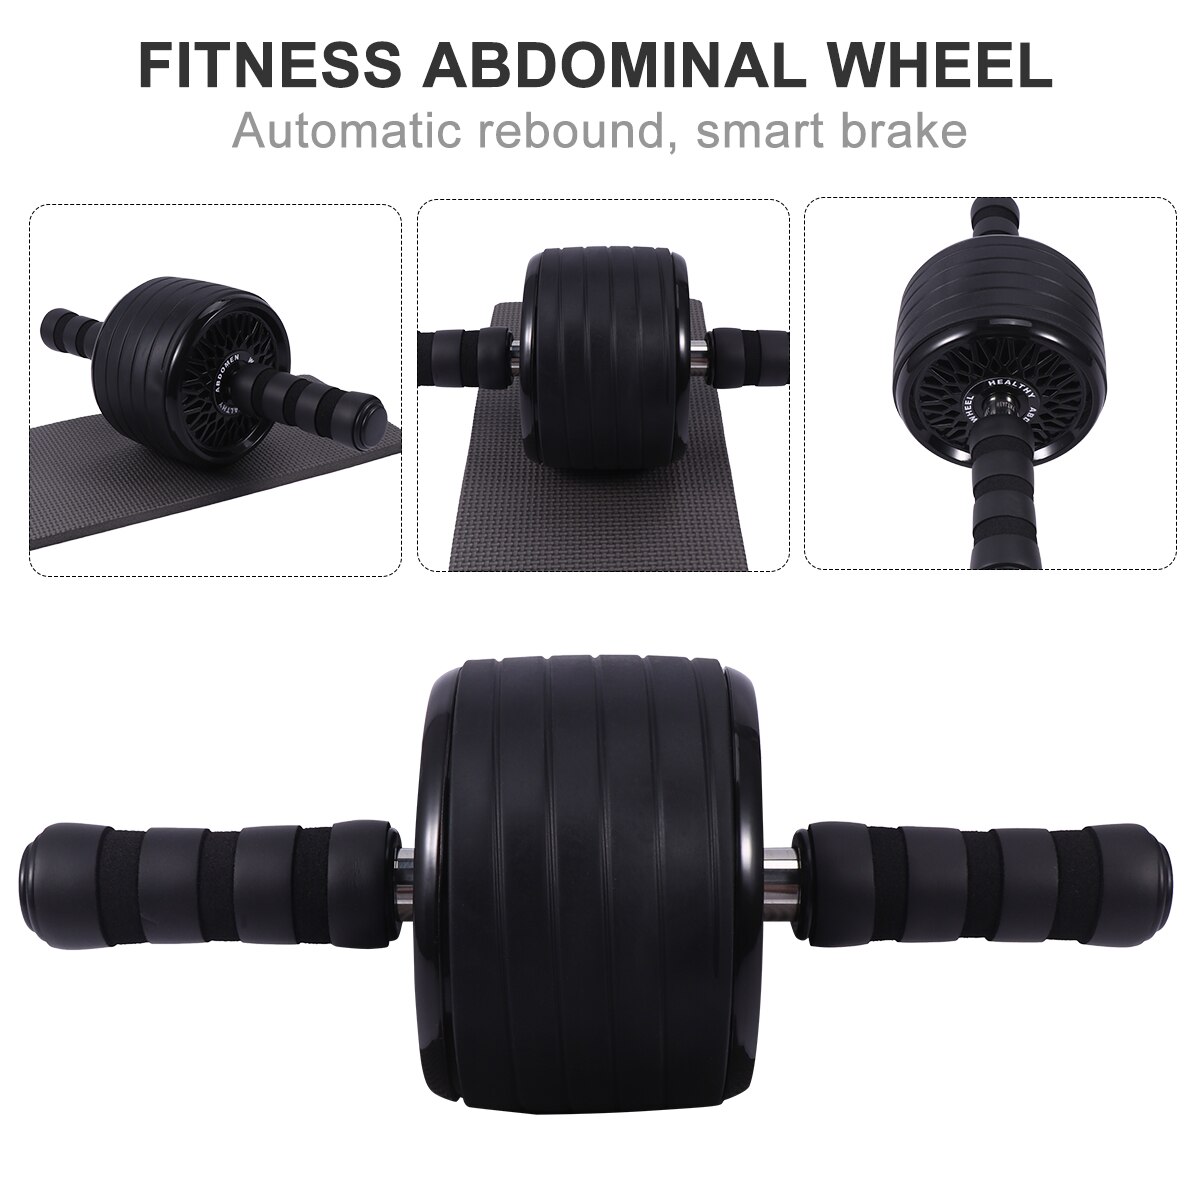 Roda de fitness grande mudo casa equipamentos de roda de fitness simples útil durável rolo de fitness abdominal